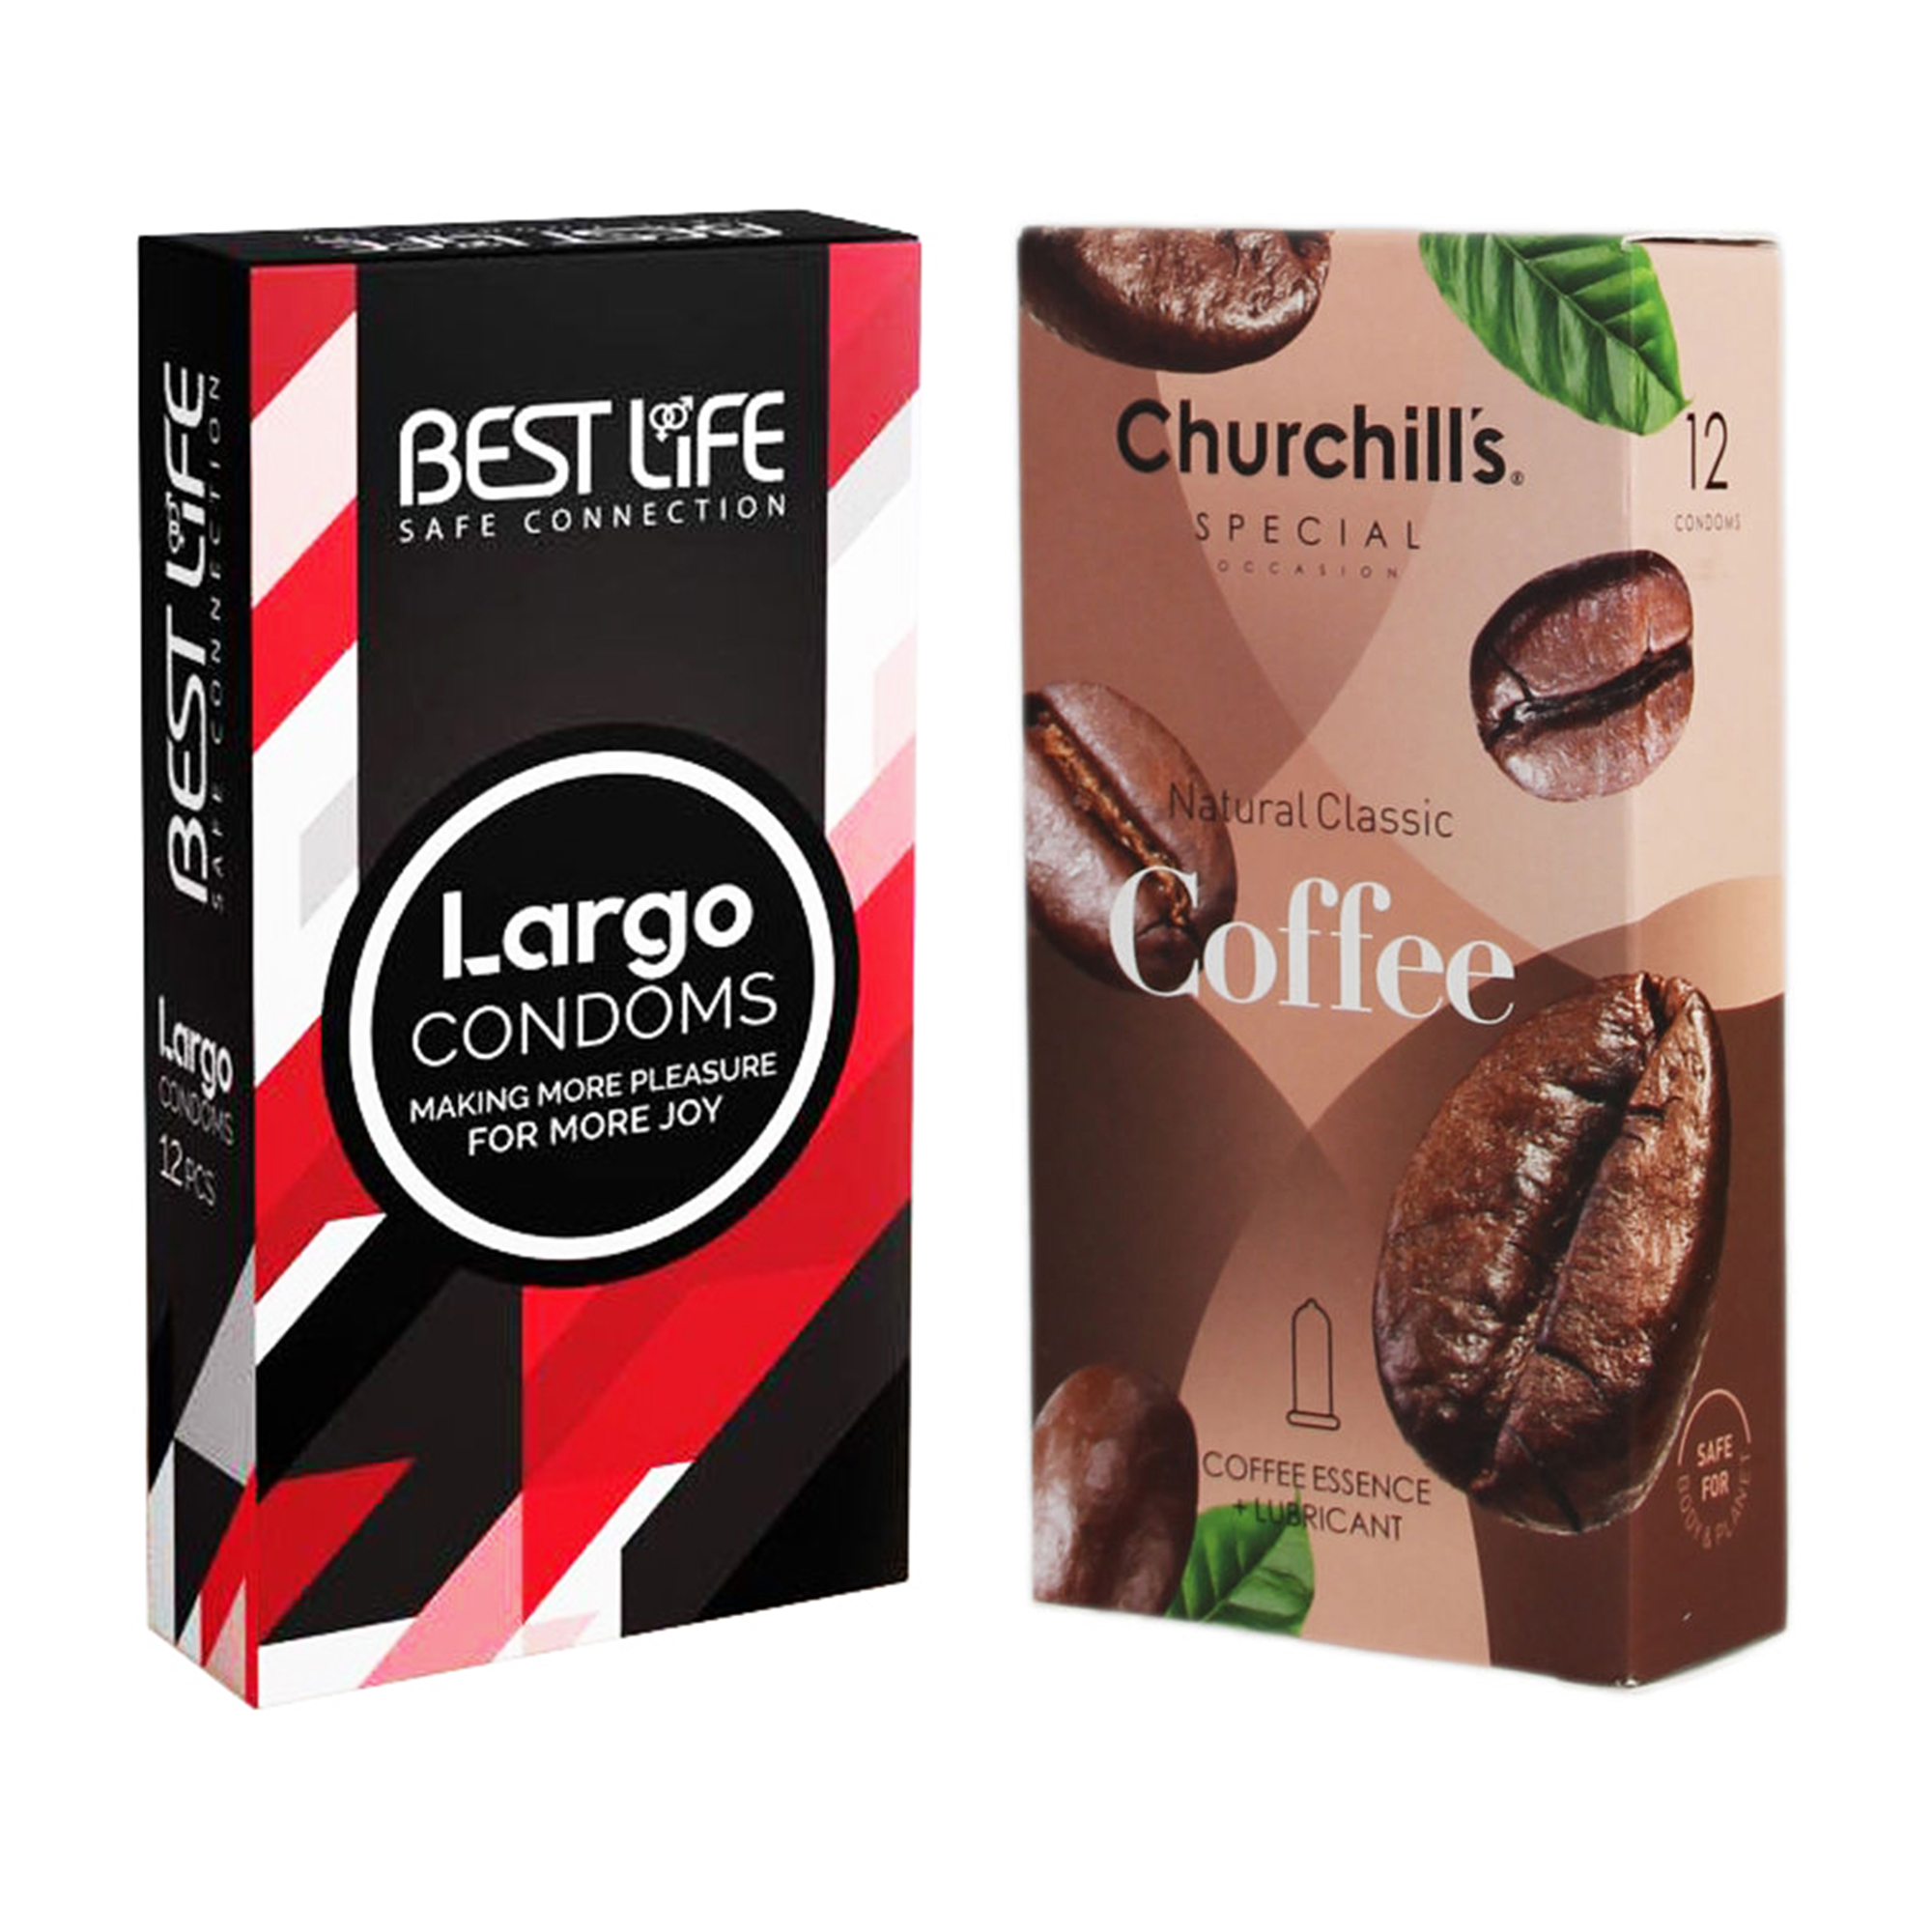 کاندوم چرچیلز مدل Coffee بسته 12 عددی به همراه کاندوم بست لایف مدل Largo بسته 12 عددی